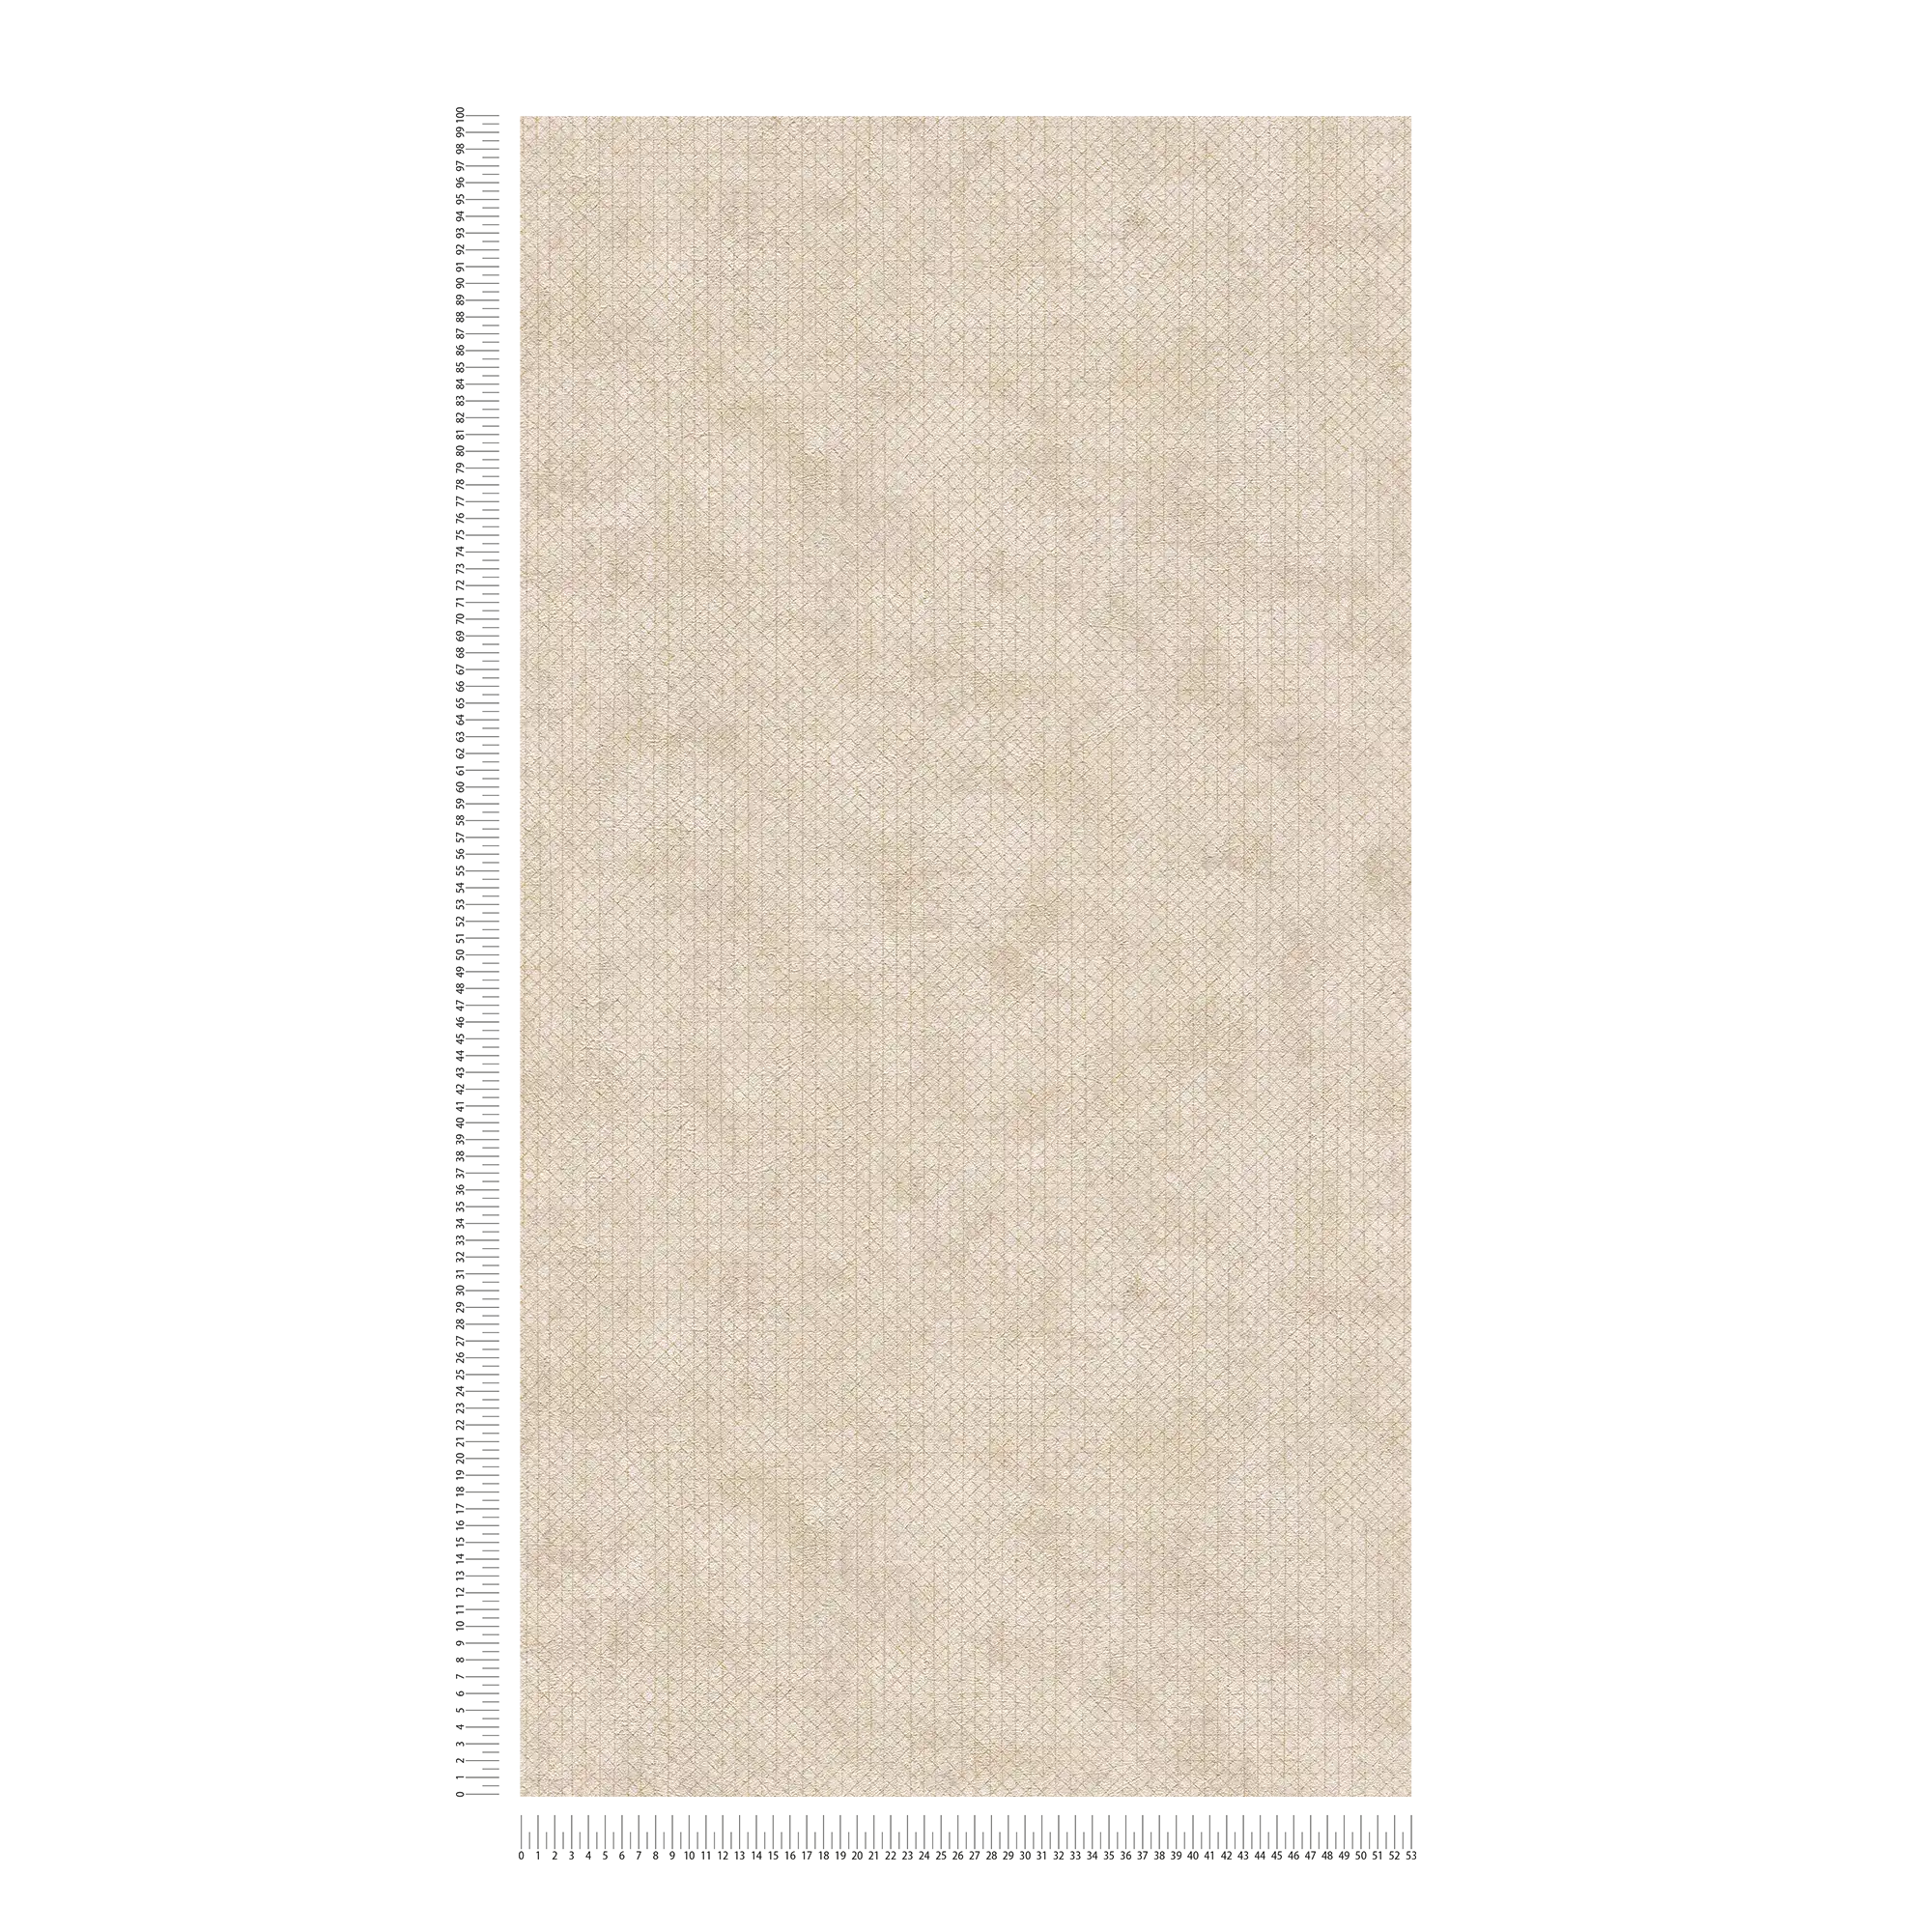             Carta da parati color crema-beige con motivo a struttura metallica
        